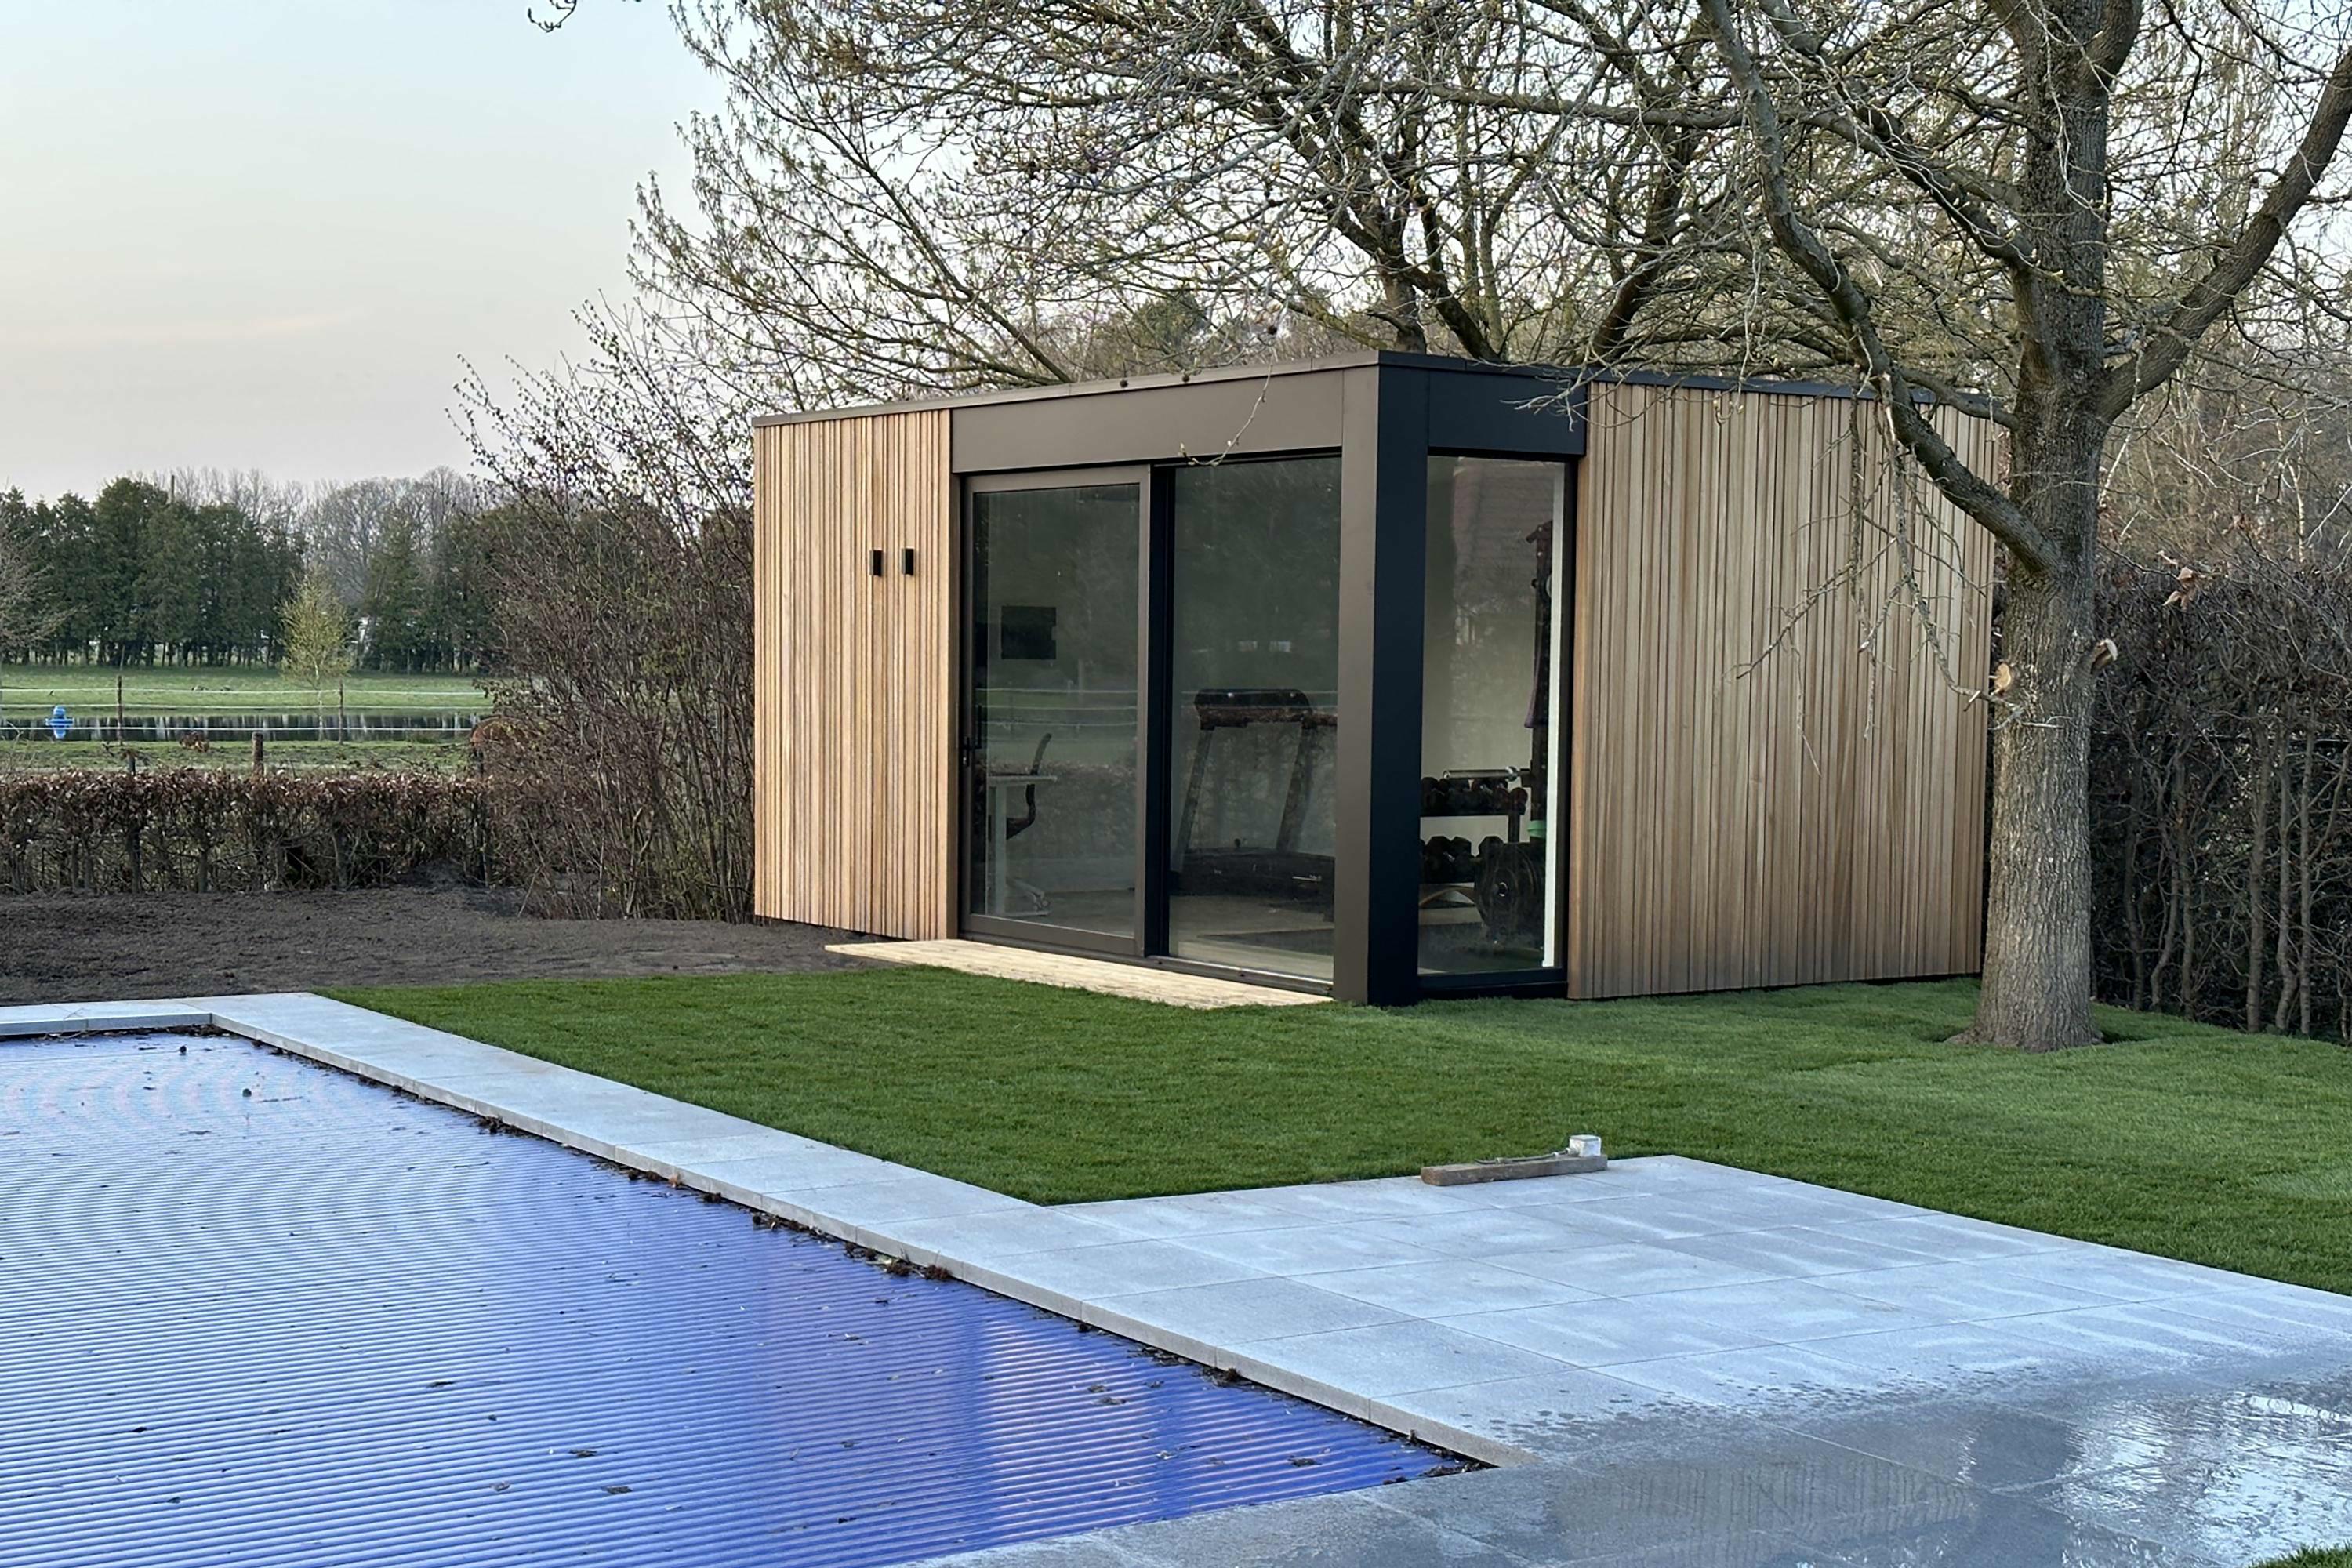 Voorbeeld van een moduus bijgebouw als poolhouse. Volledig in hout en met plat dak.